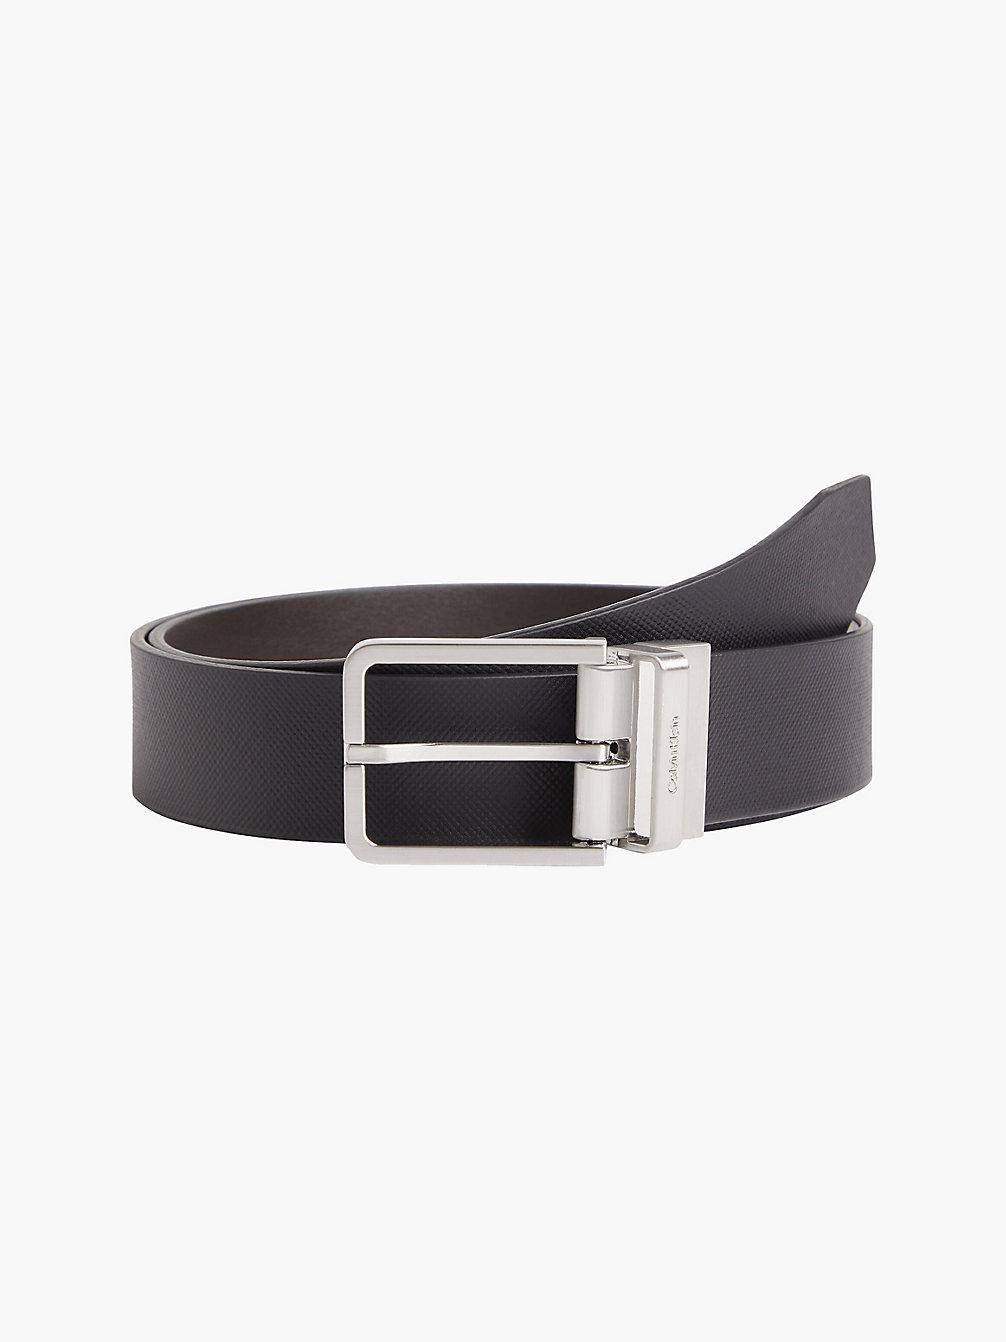 BLACK TEXTURED/DARK BROWN SMOOTH Reversible Leather Belt undefined men Calvin Klein